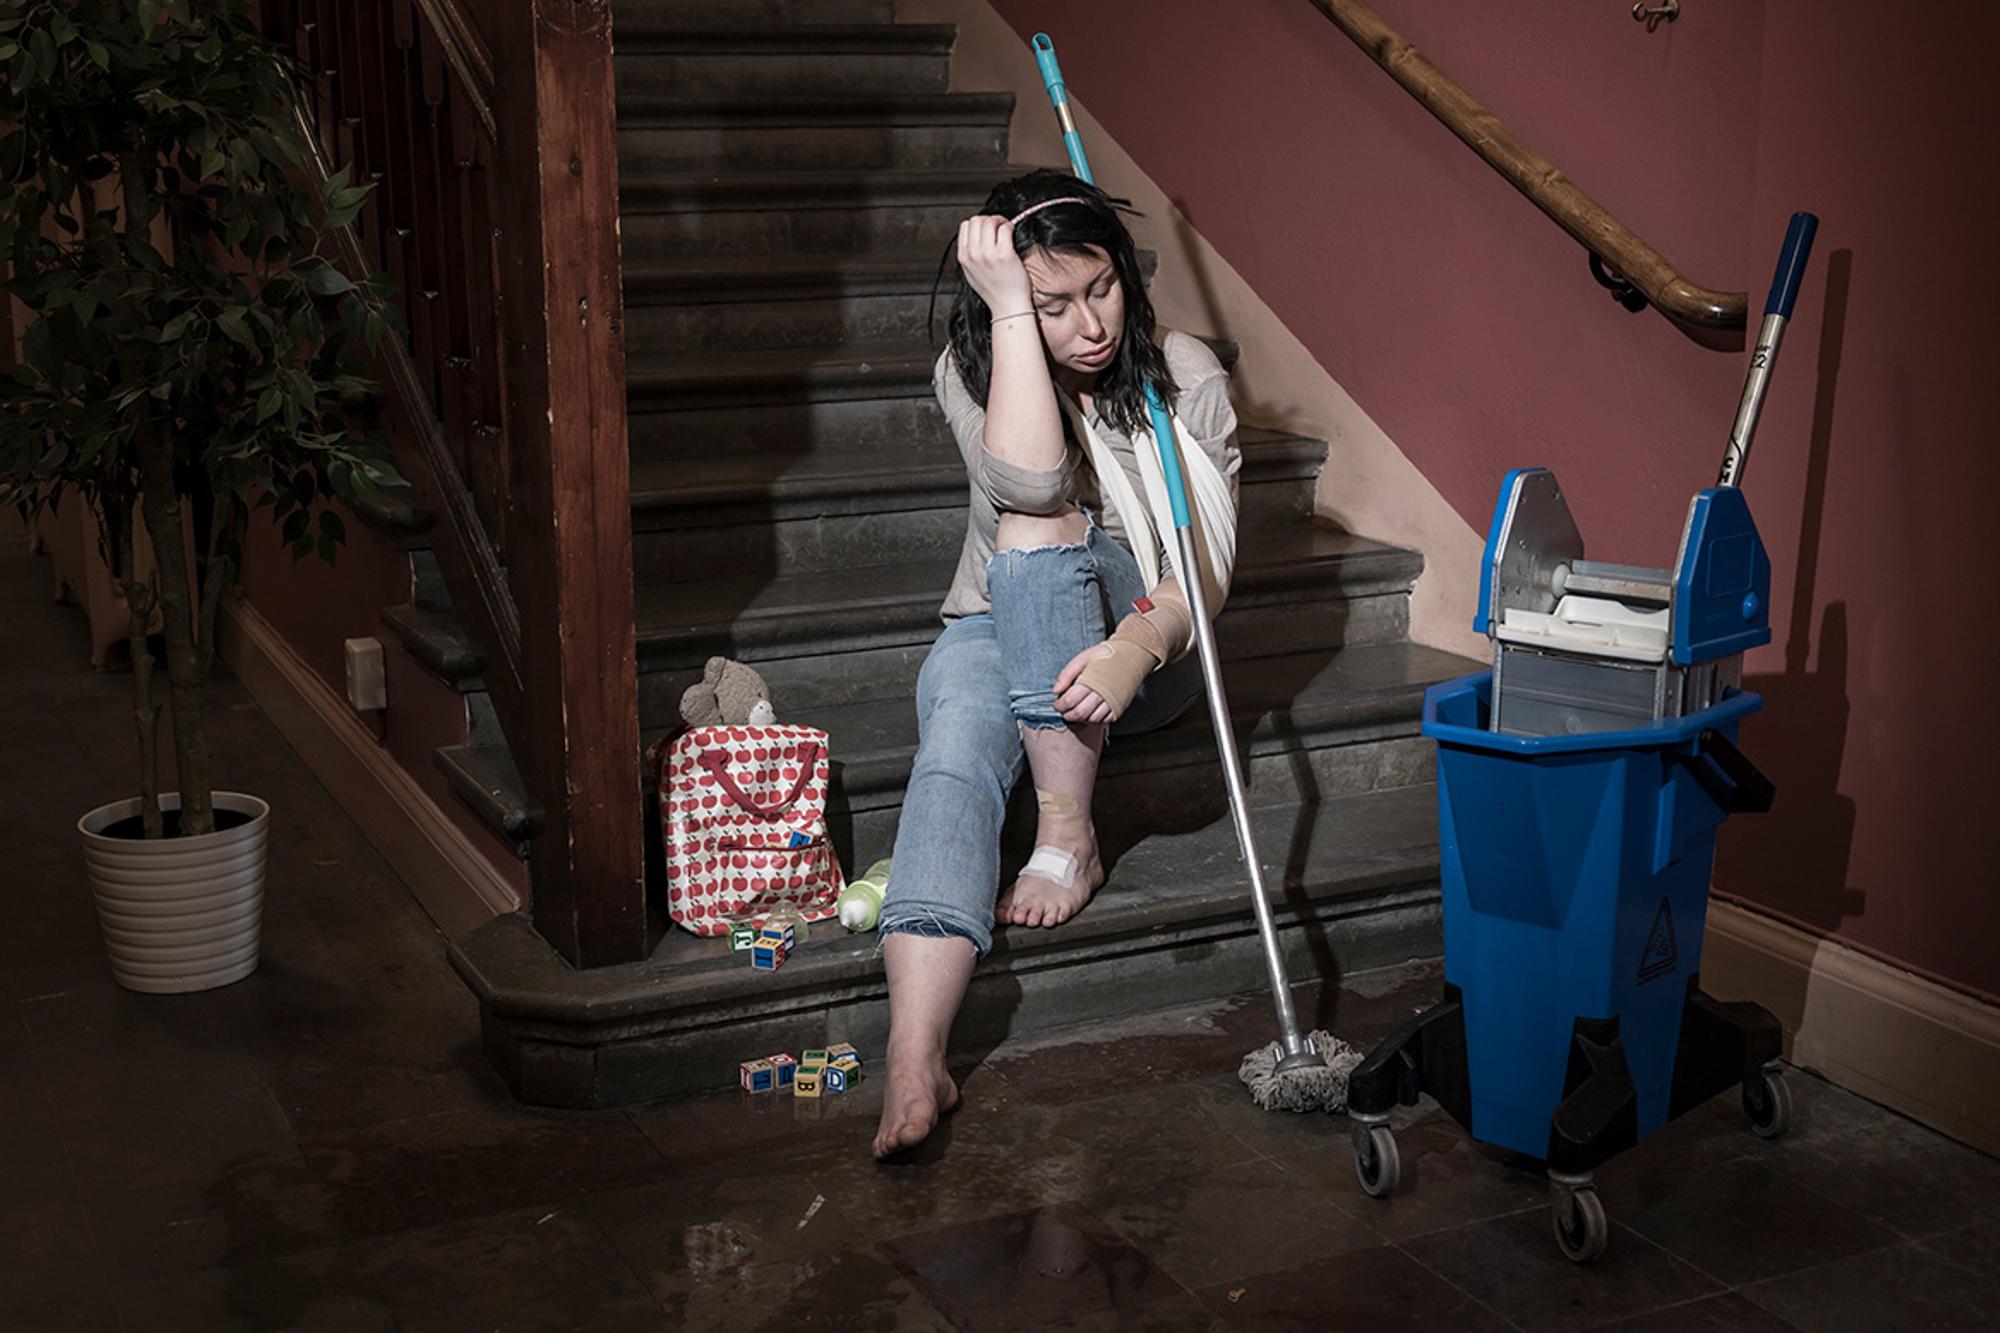 En ung och utmattad kvinna som sitter i en trappuppgång. Hon har ett plåster på ena foten och hennes ena handled är inlindad i bandage. Runtom henne står det städutrutsning.